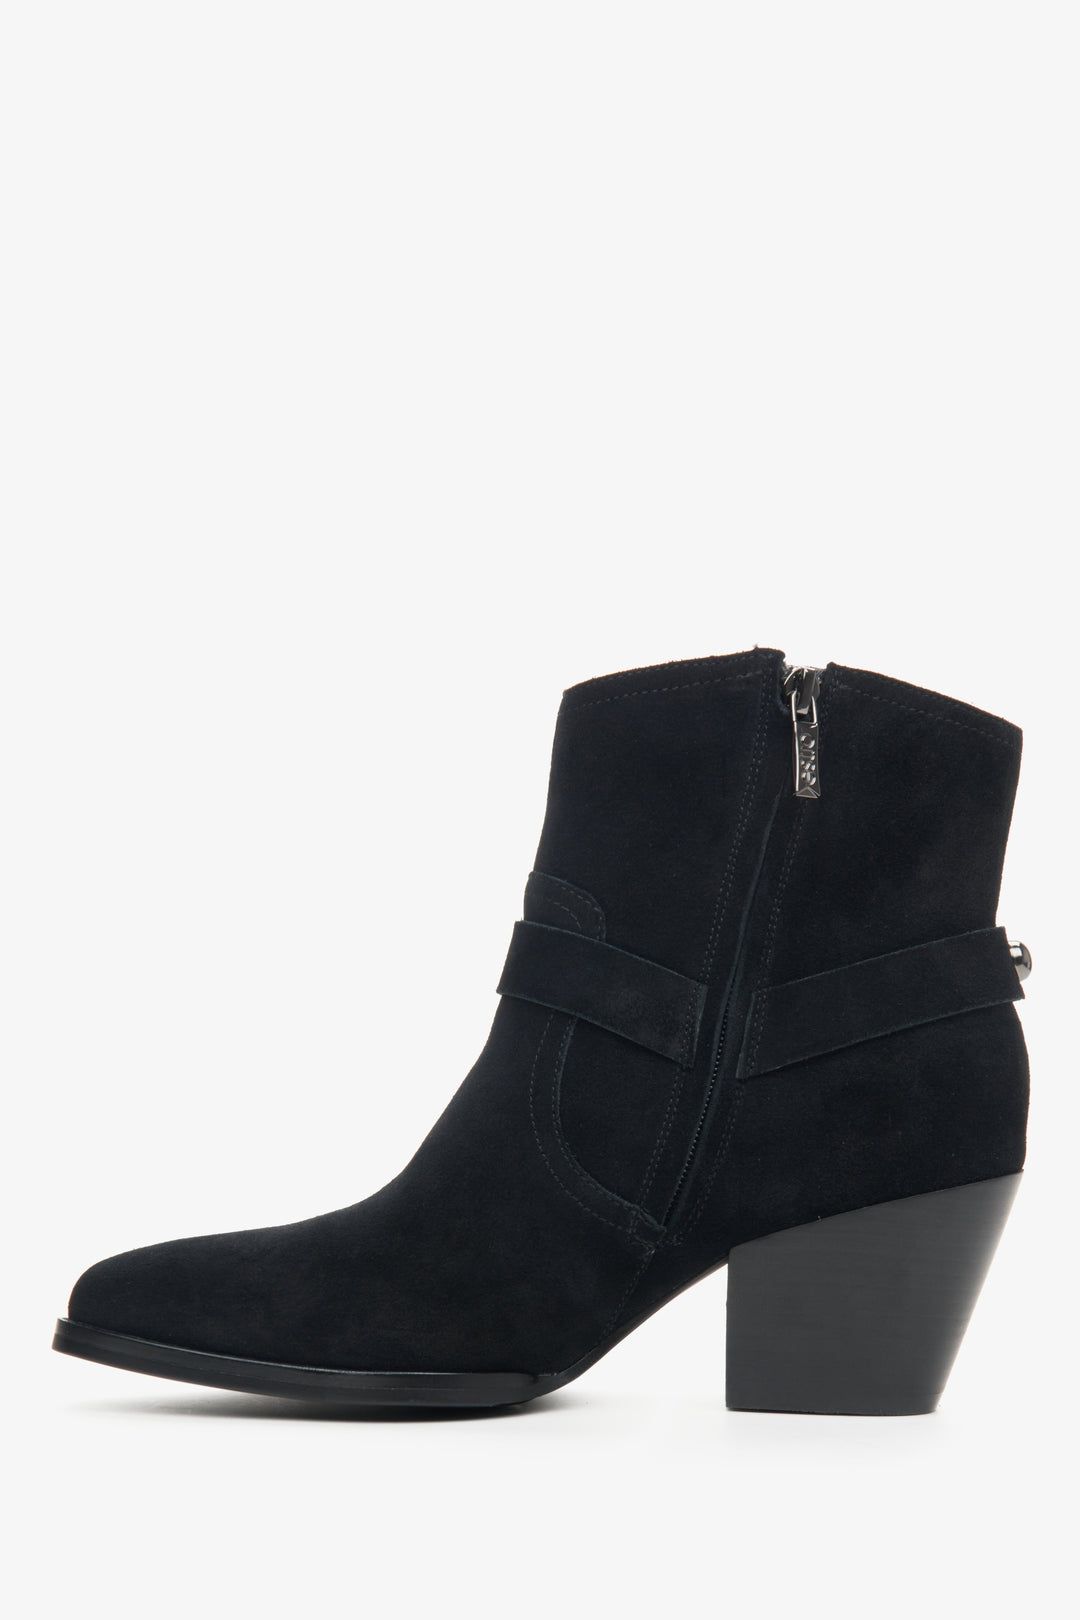 Women's low top black cowboy boots by Estro - shoe profile.